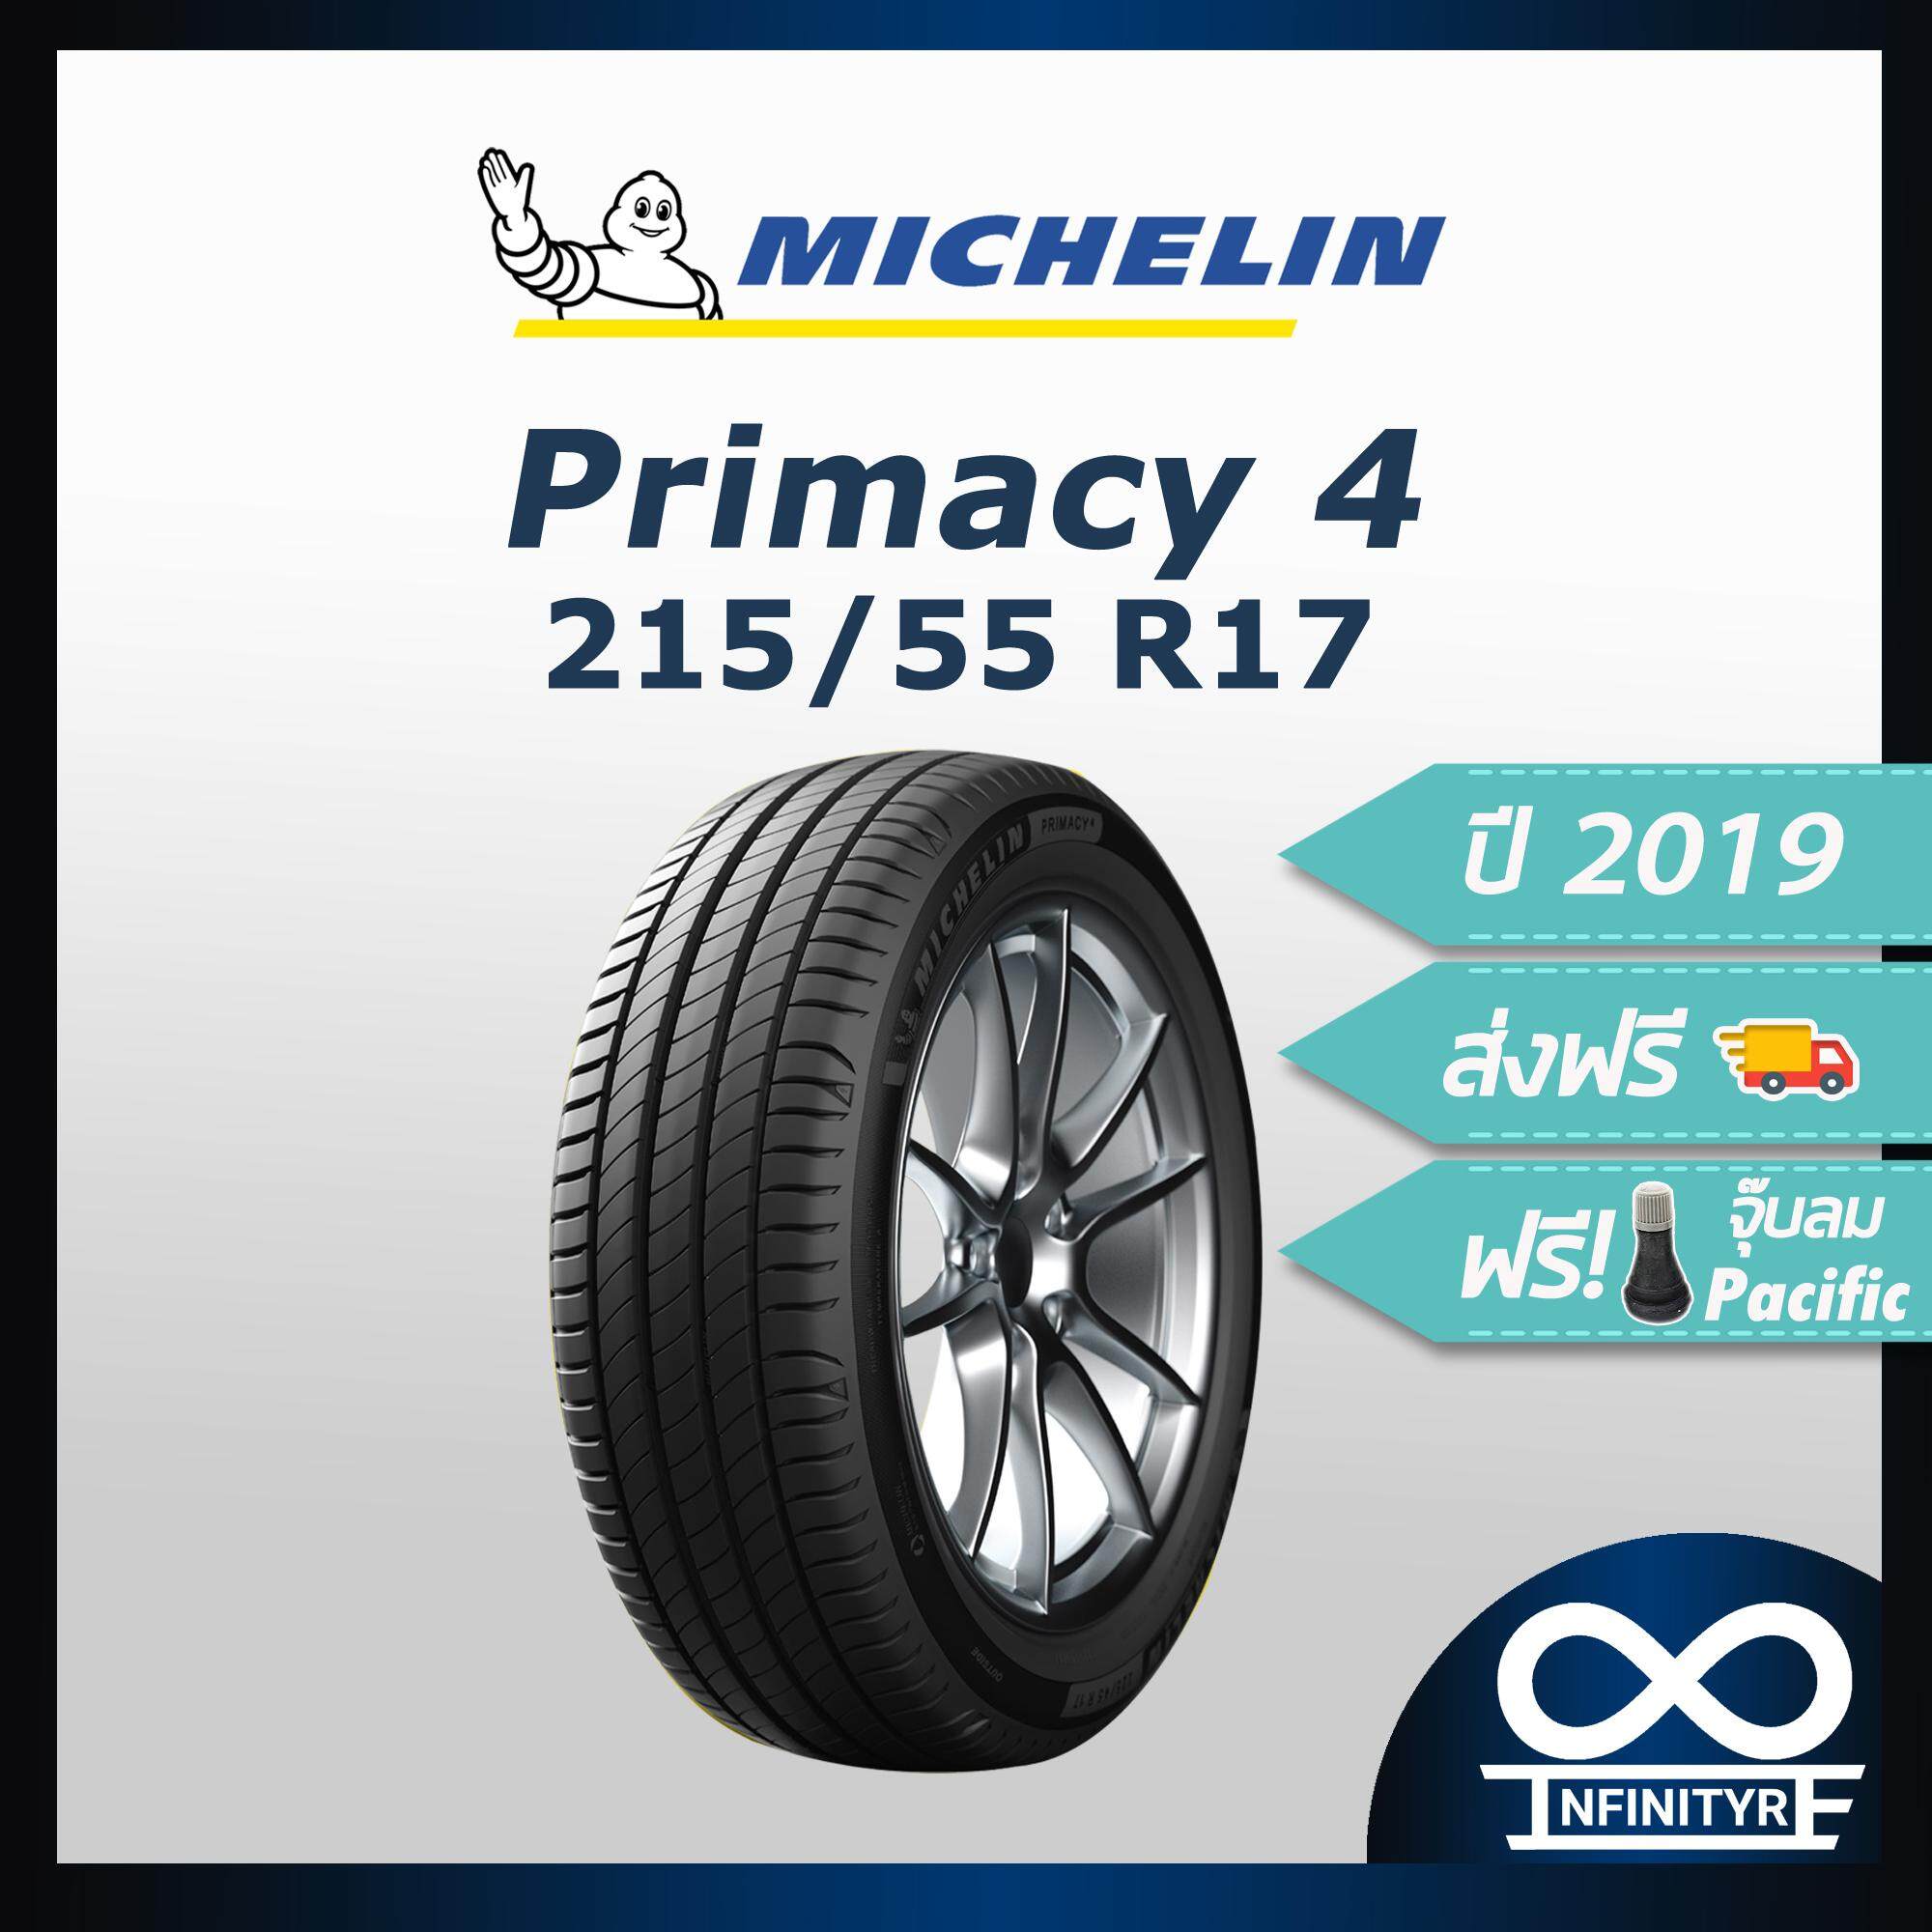 ประกันภัย รถยนต์ แบบ ผ่อน ได้ เชียงใหม่ 215/55R17 Michelin มิชลิน รุ่น Primacy 4 (ปี2019) ฟรี! จุ๊บลมPacific เกรดพรีเมี่ยม